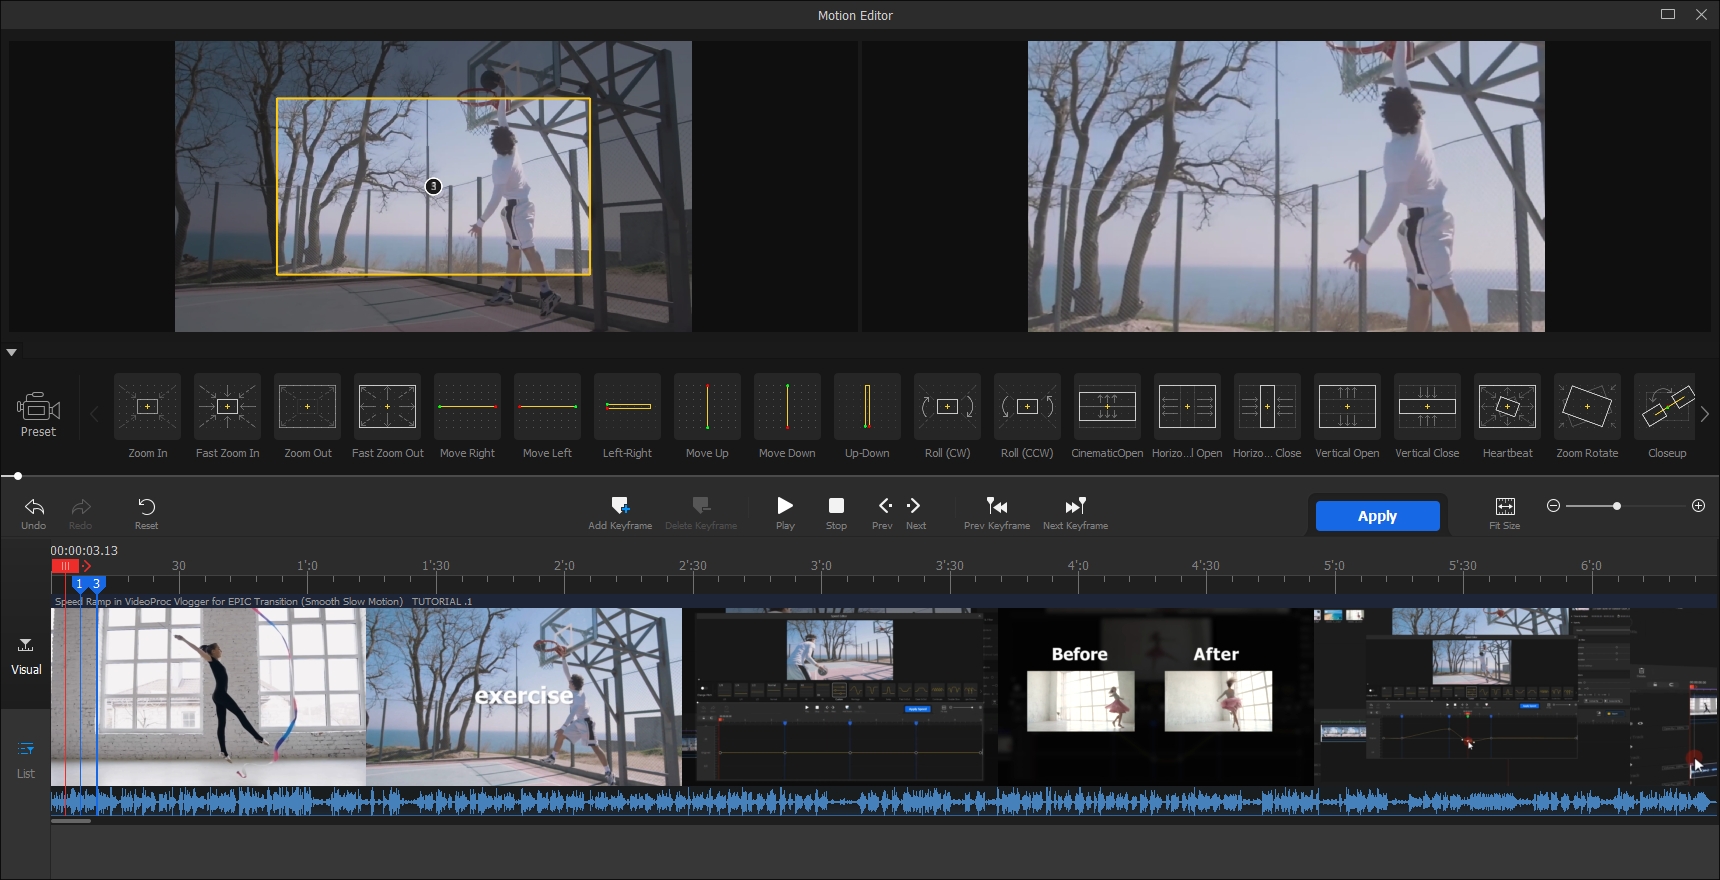 Mezi pokročilé funkce programu VideoProc Vlogger patří i „Motion Editor“, který umí do záběrů přidat efekt pohybu a zoomování kamery. V samostatném okně této funkce můžete záběry vyladit s pomocí připravených šablon efektů a pak vložit zpět na časovou osu. | Zdroj: Vlogger